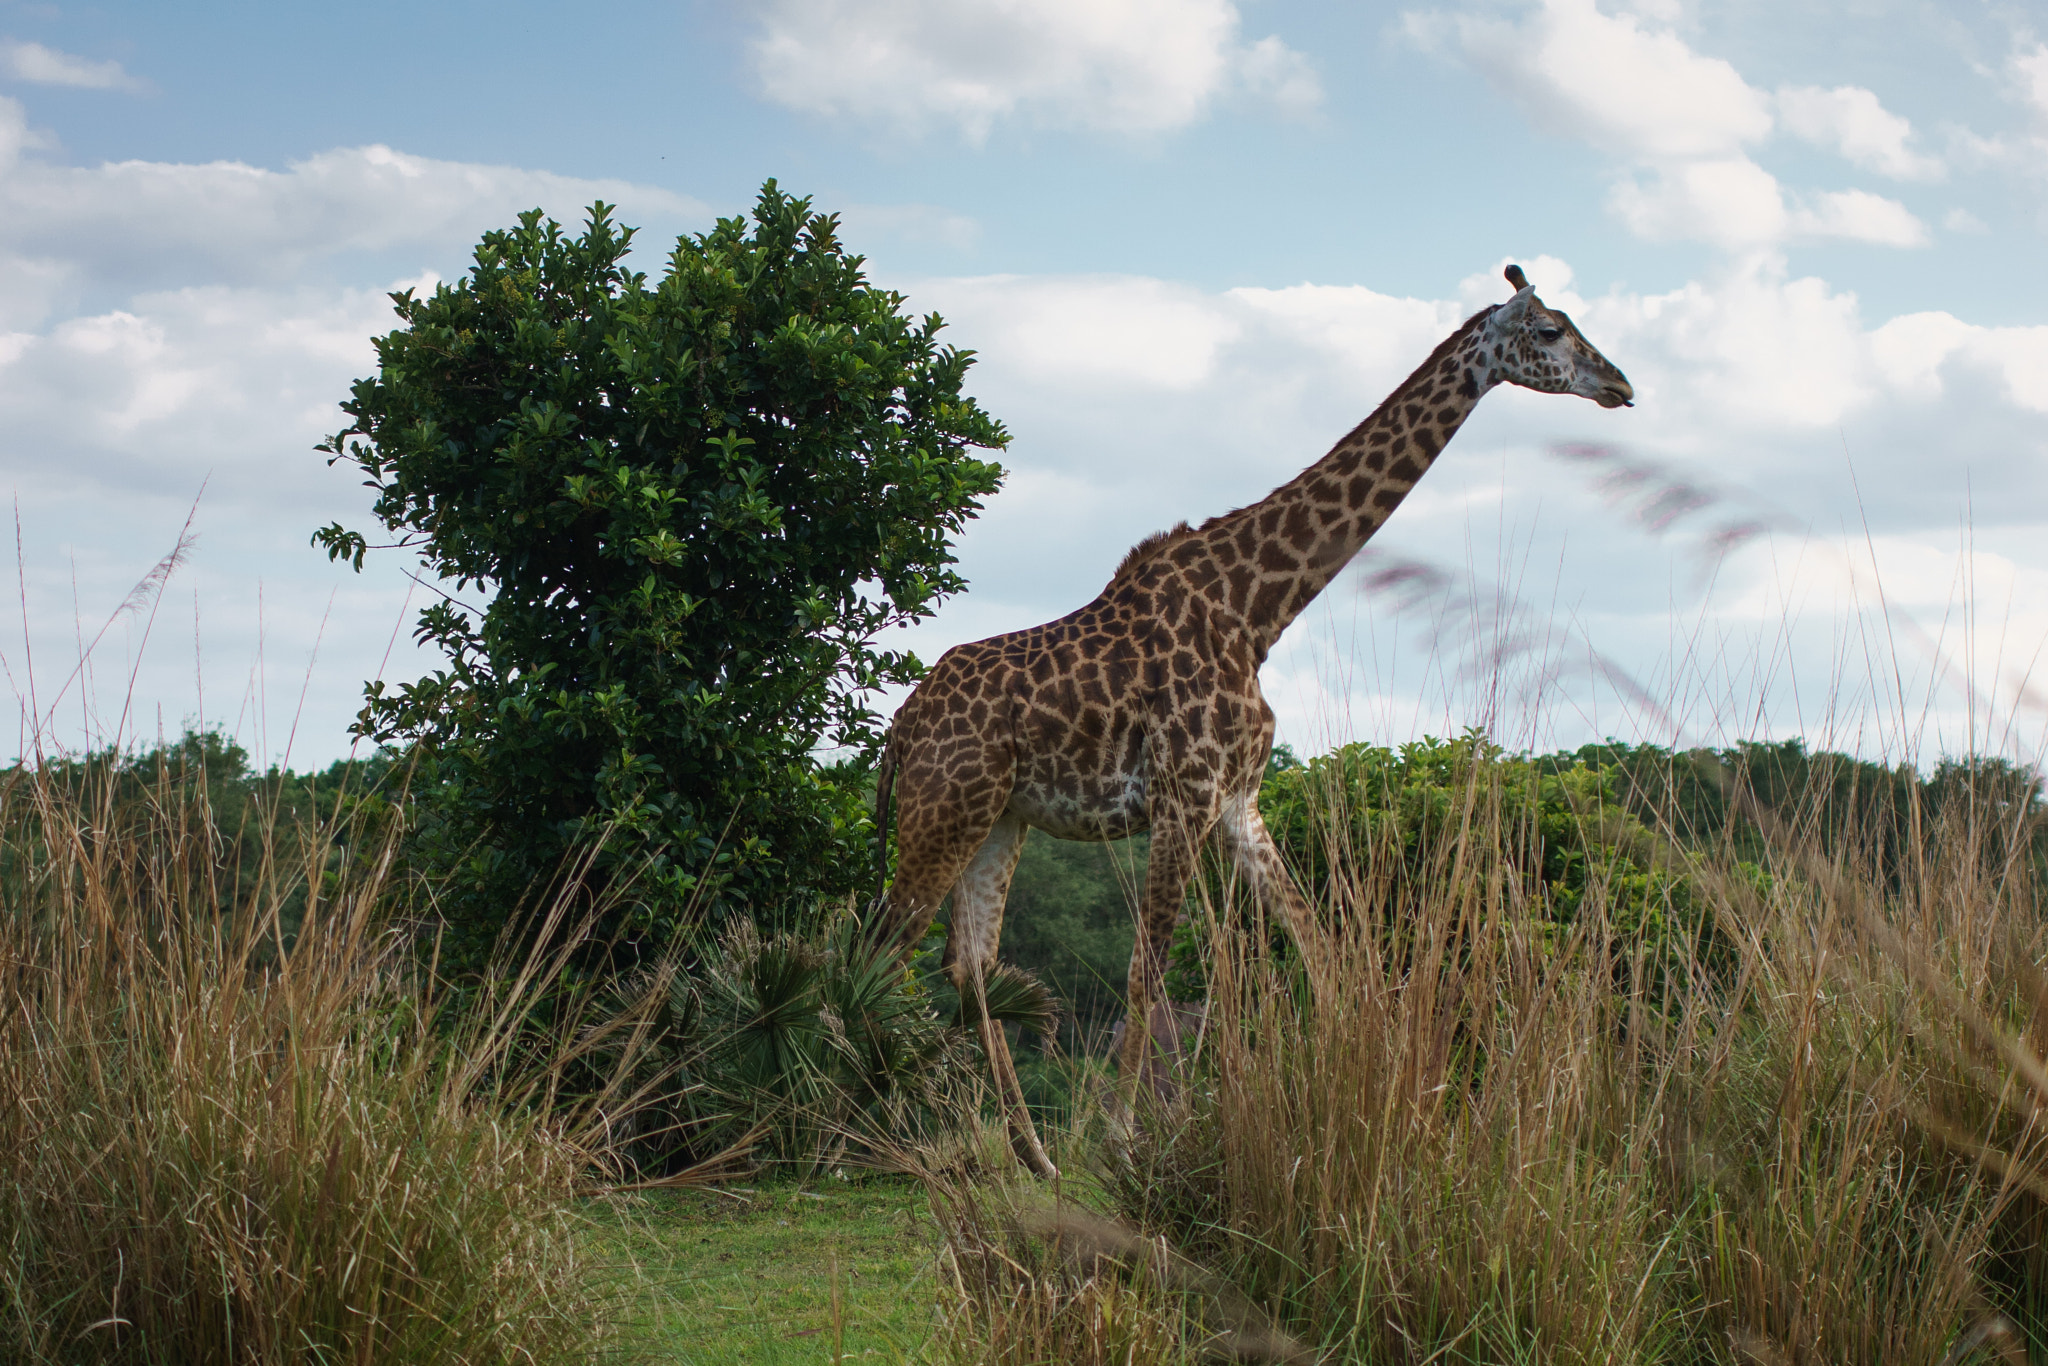 50-150mm F2.8 sample photo. Giraffe photography